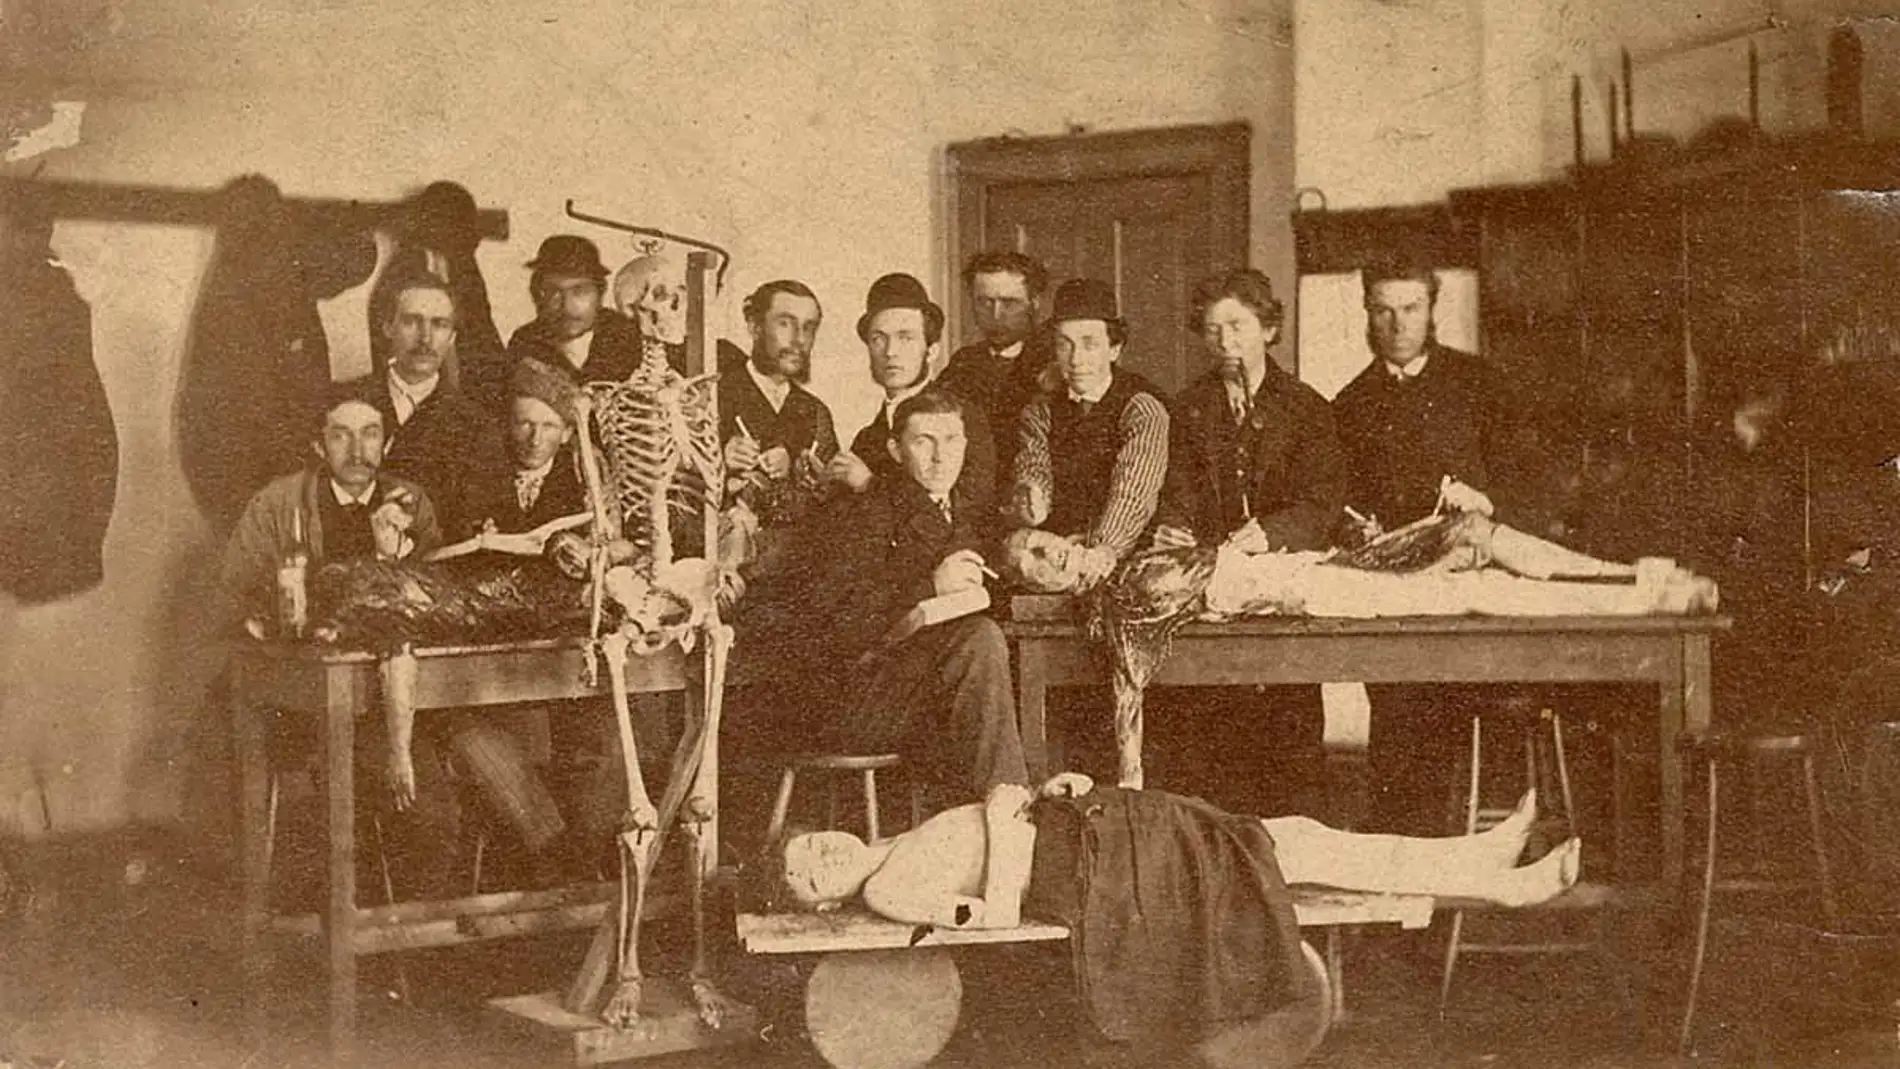 "Clases de anatomía" 1910